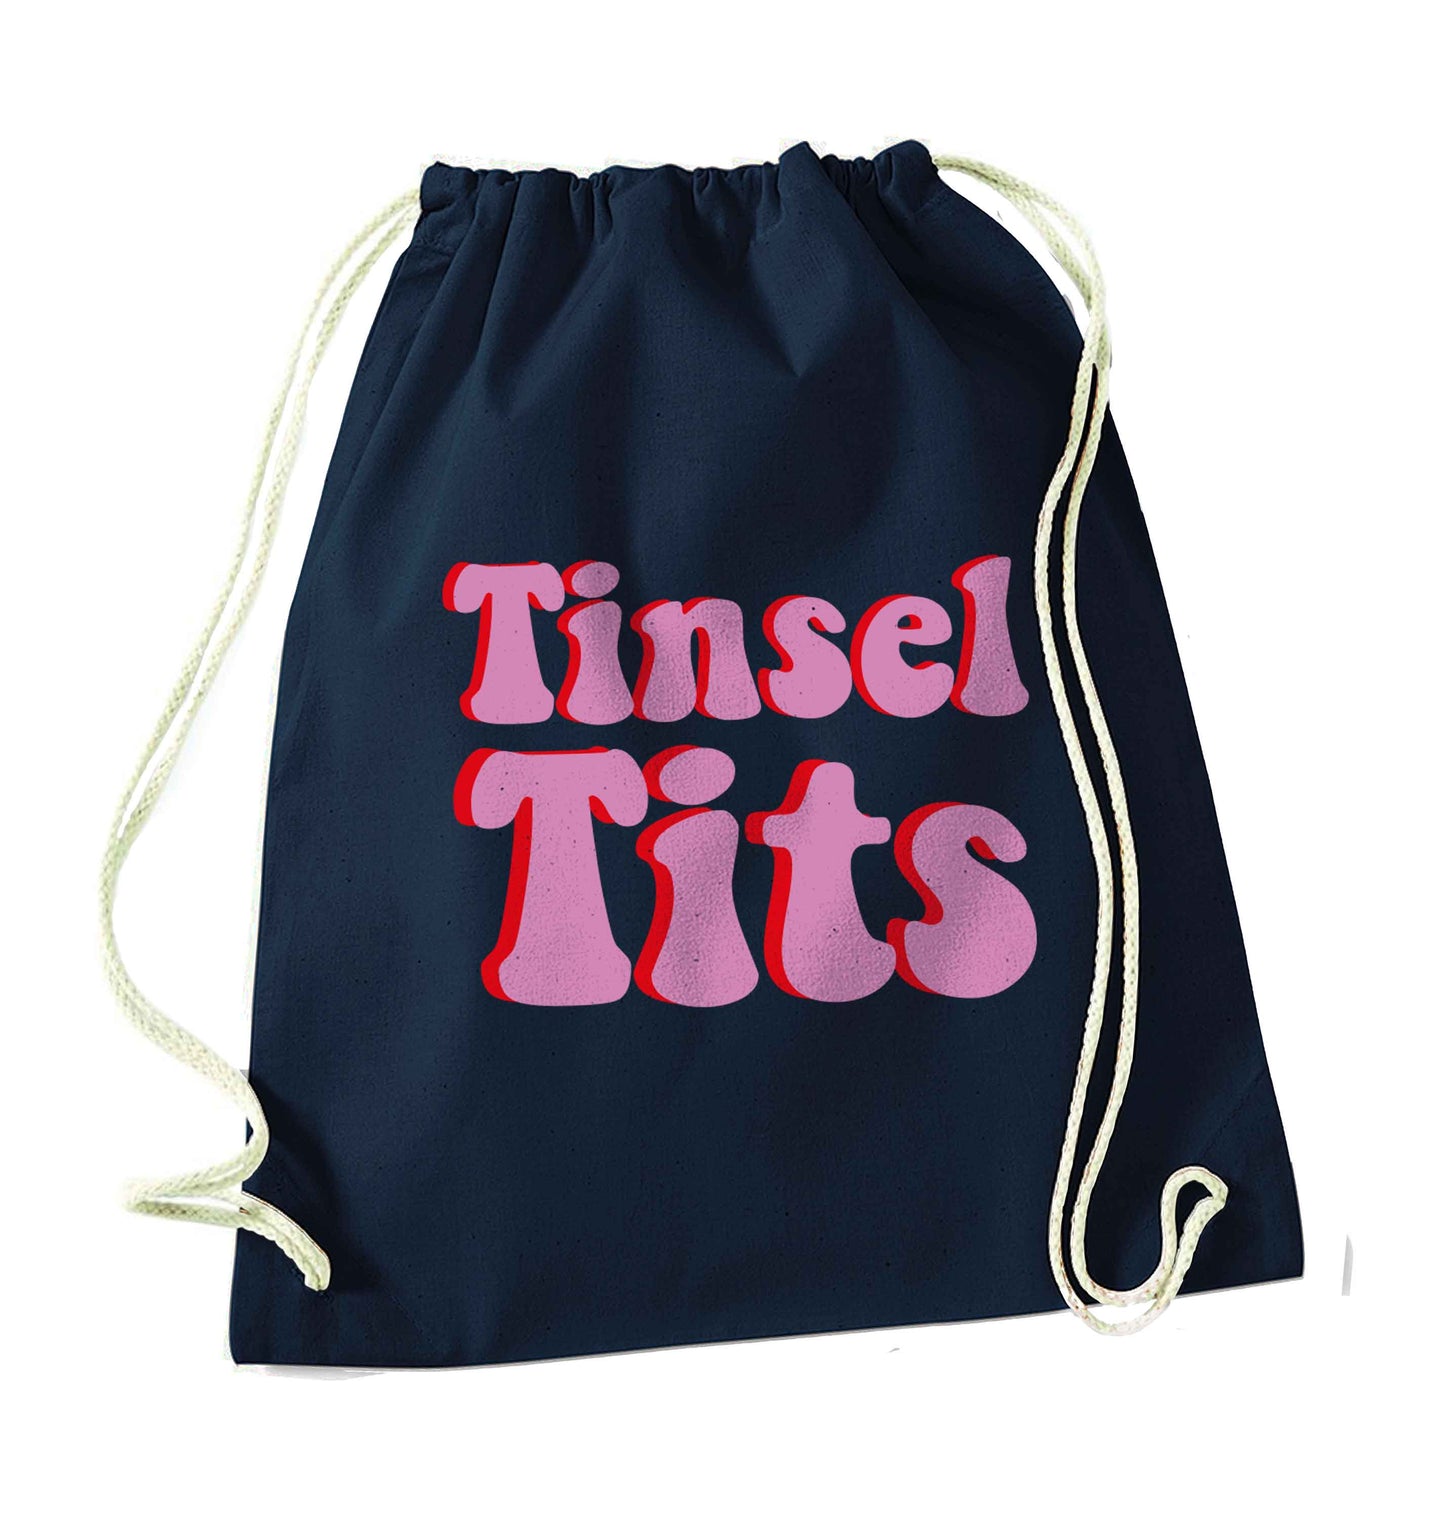 Tinsel tits navy drawstring bag